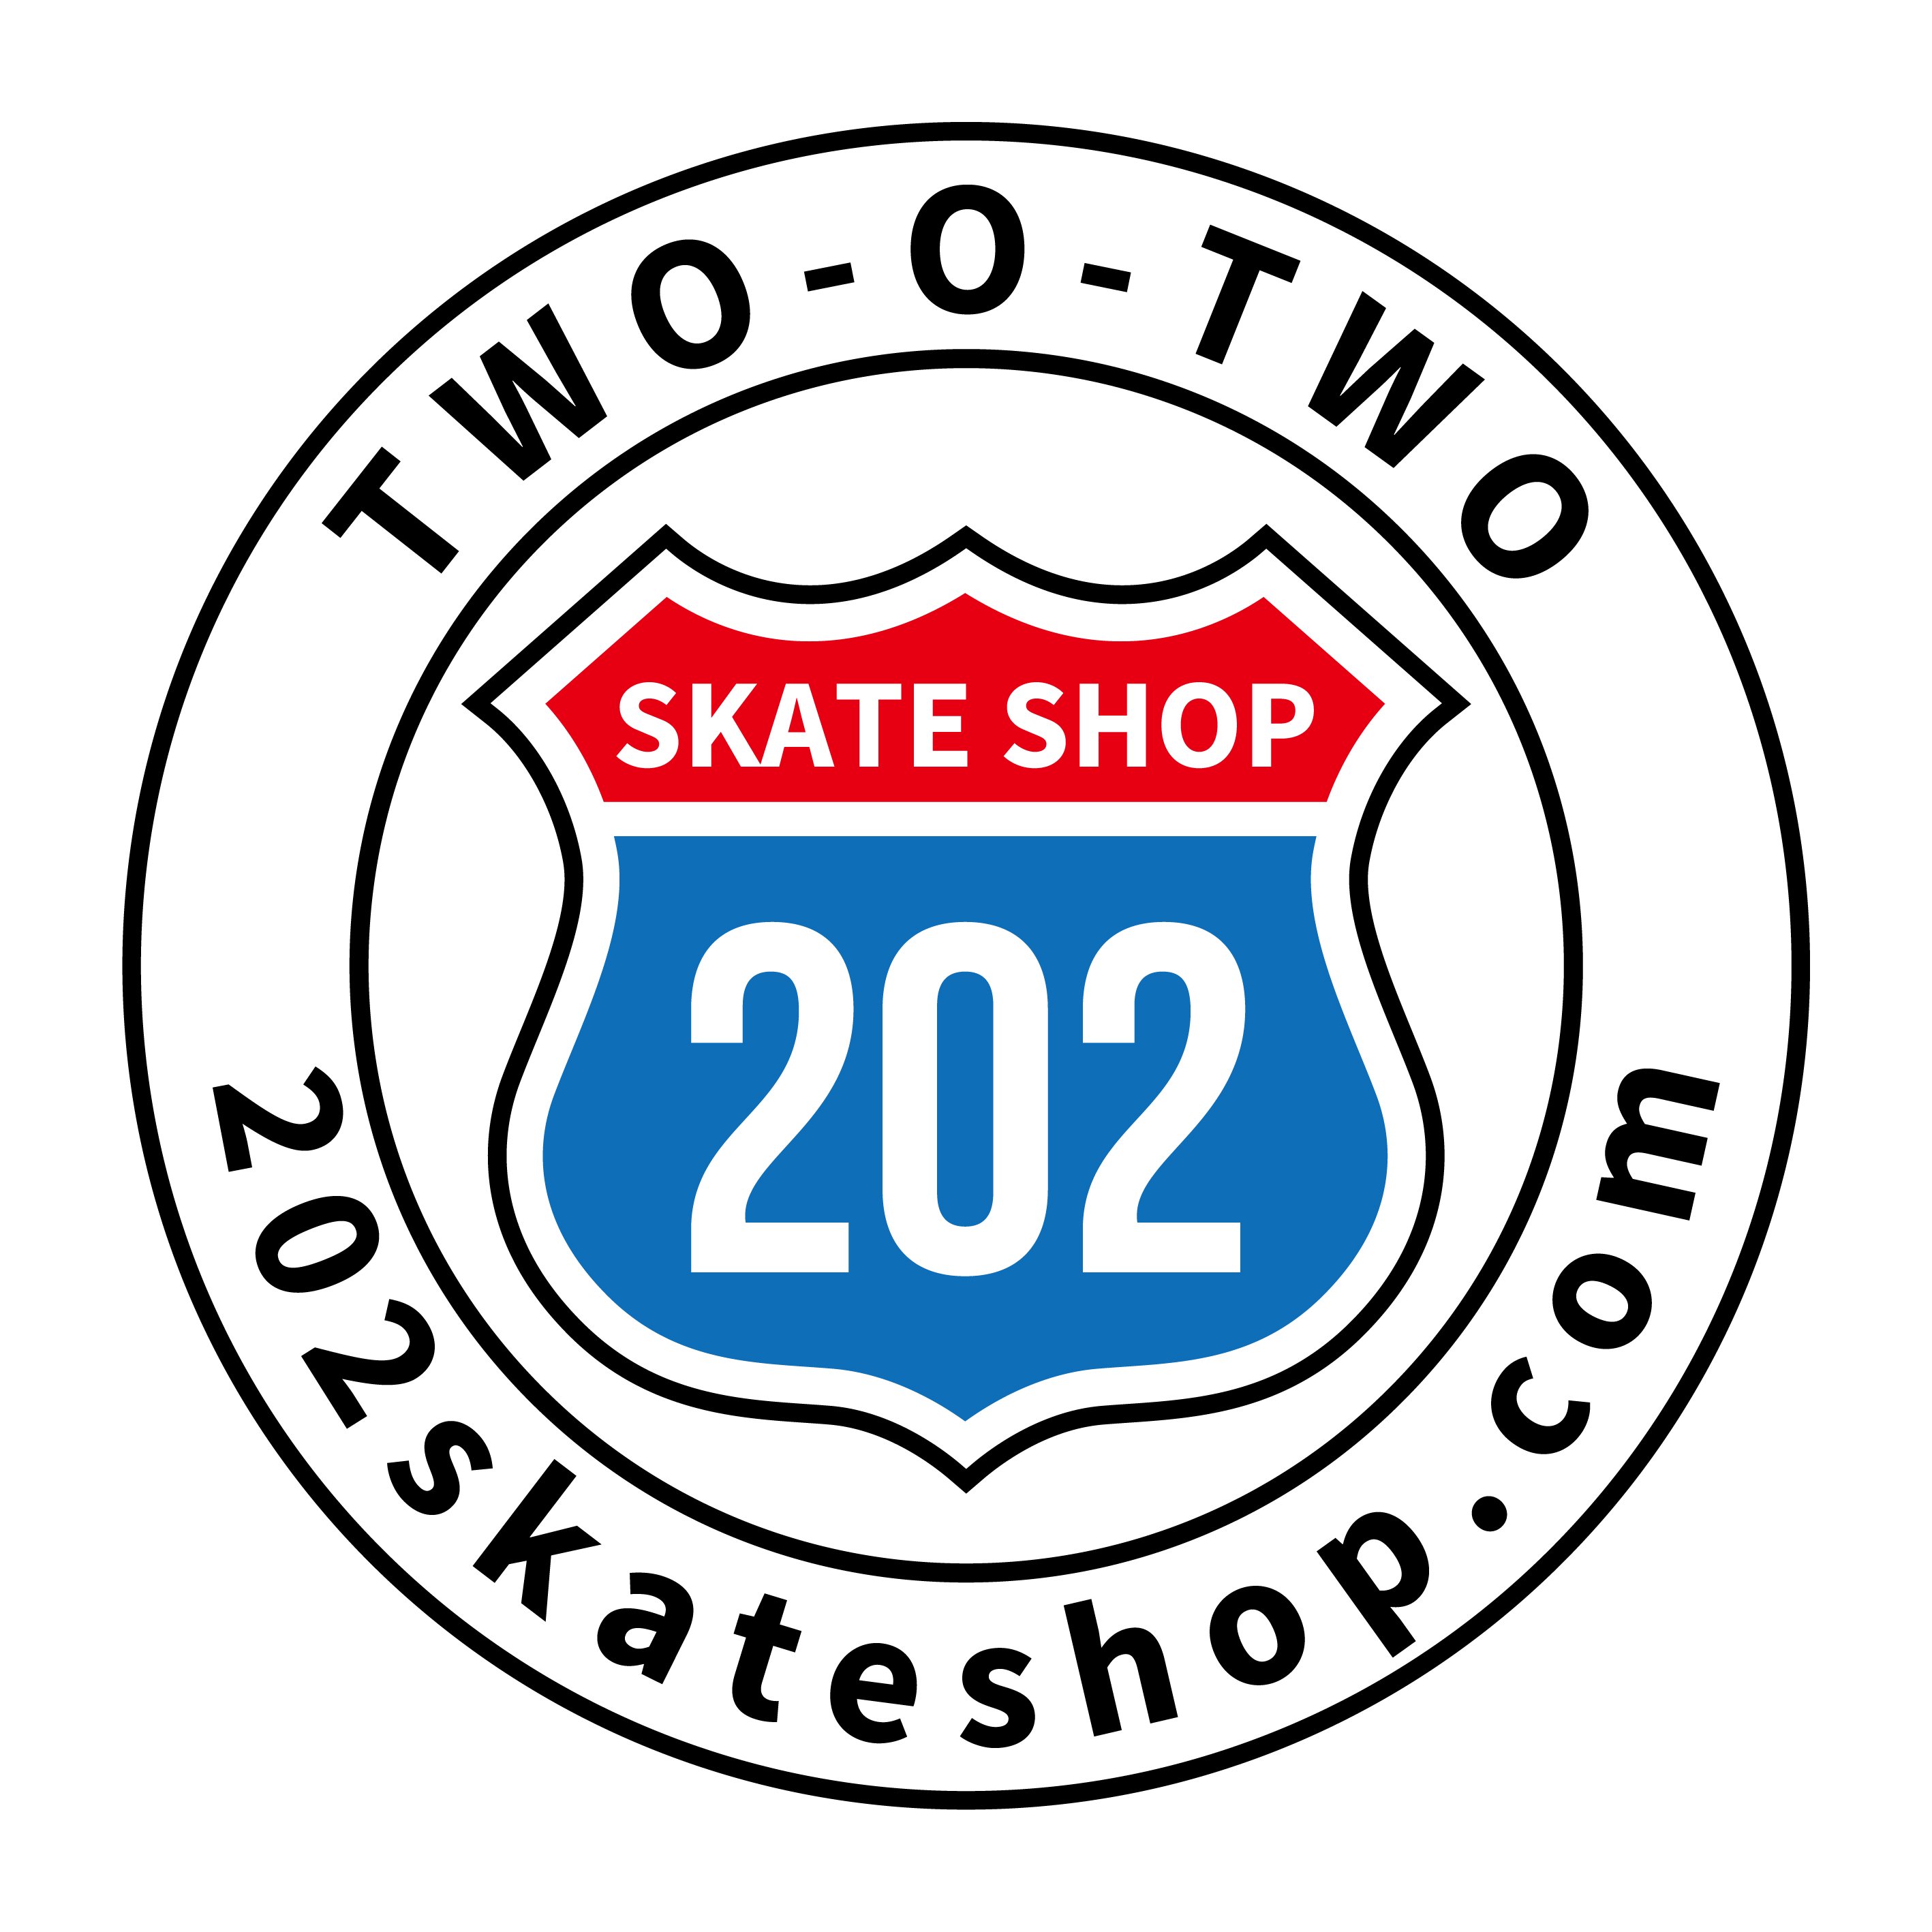 スケートボード ベアリング - 202skateshop ツー・オー・ツー スケート